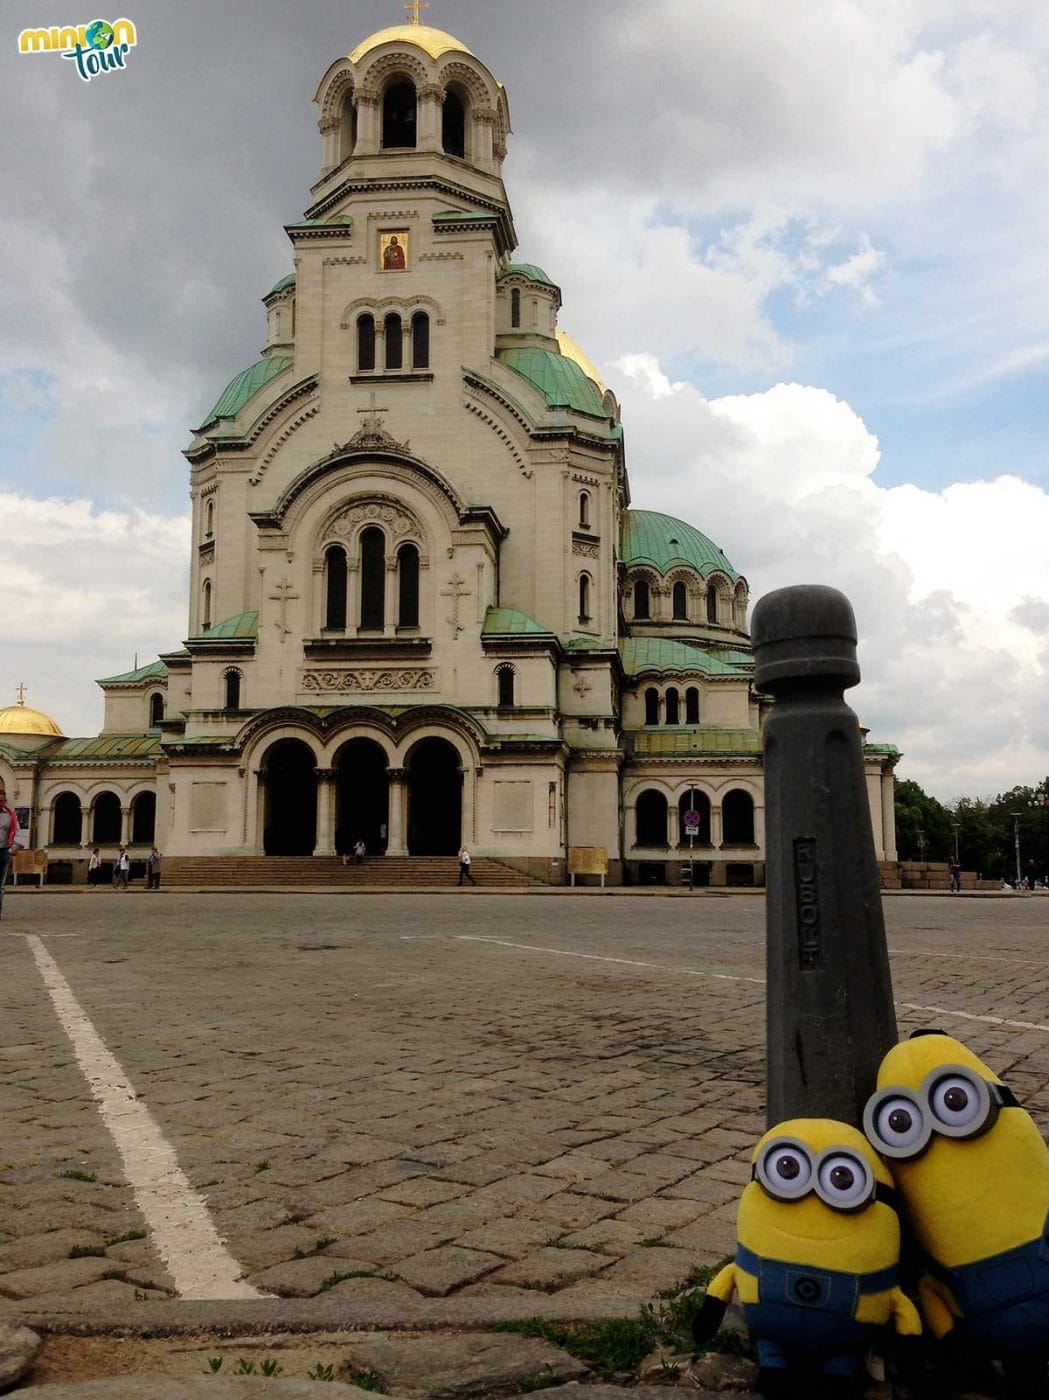 La Catedral de Aleksander Nevsky